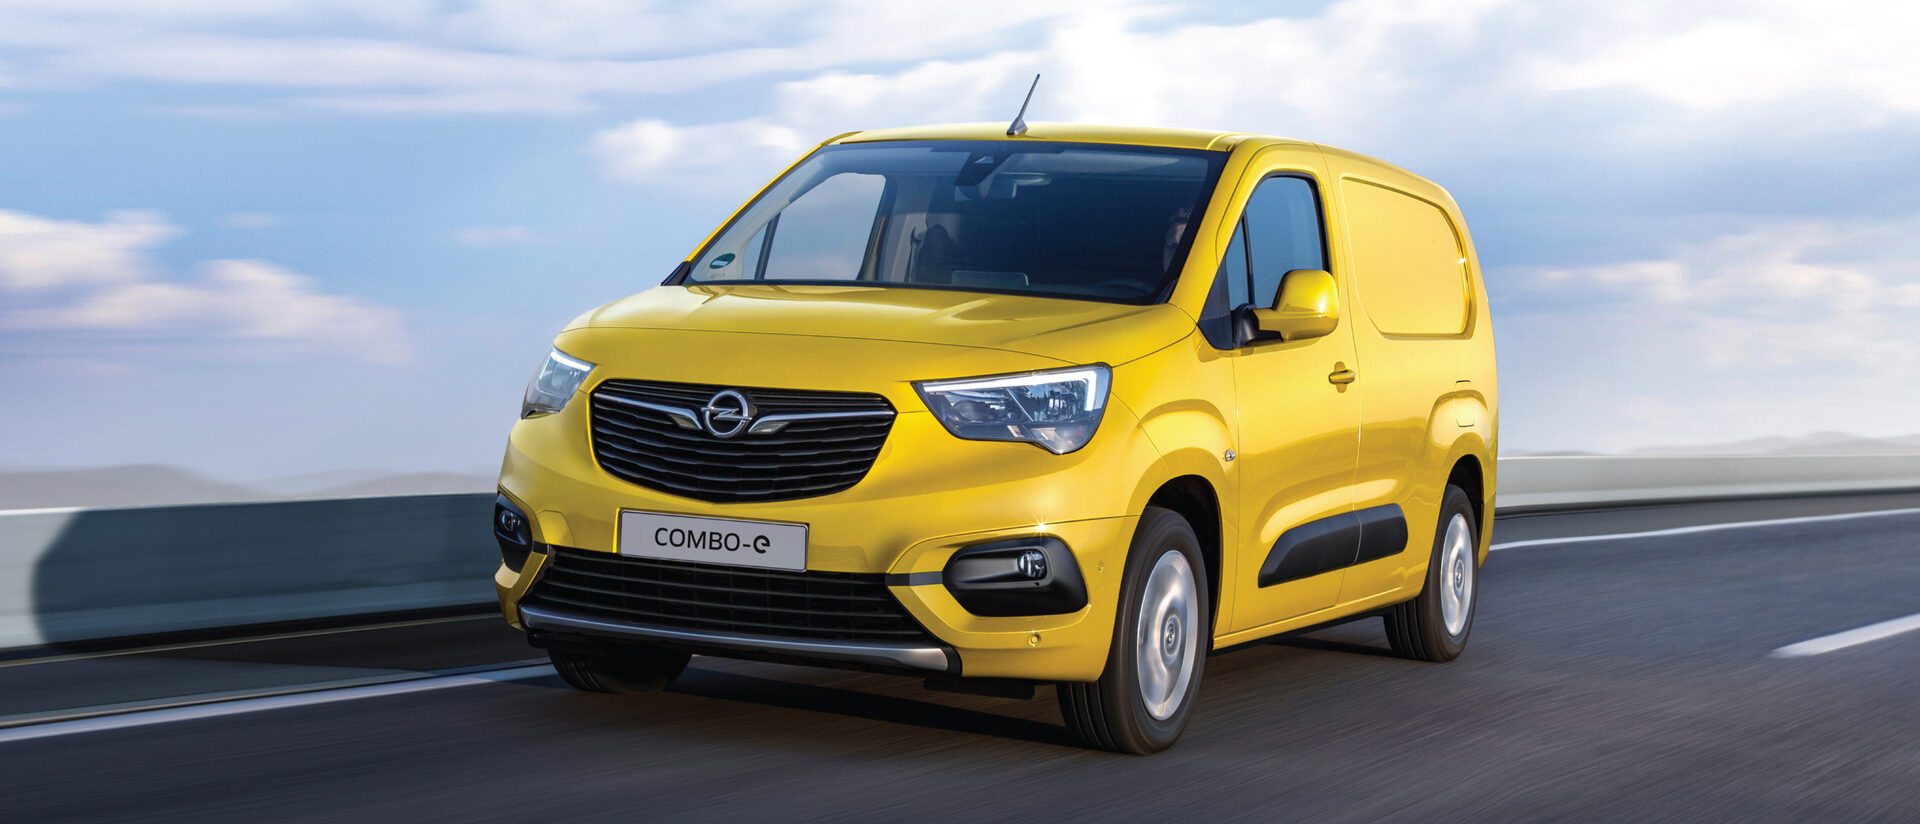 Opel Combo-e: Exterior.